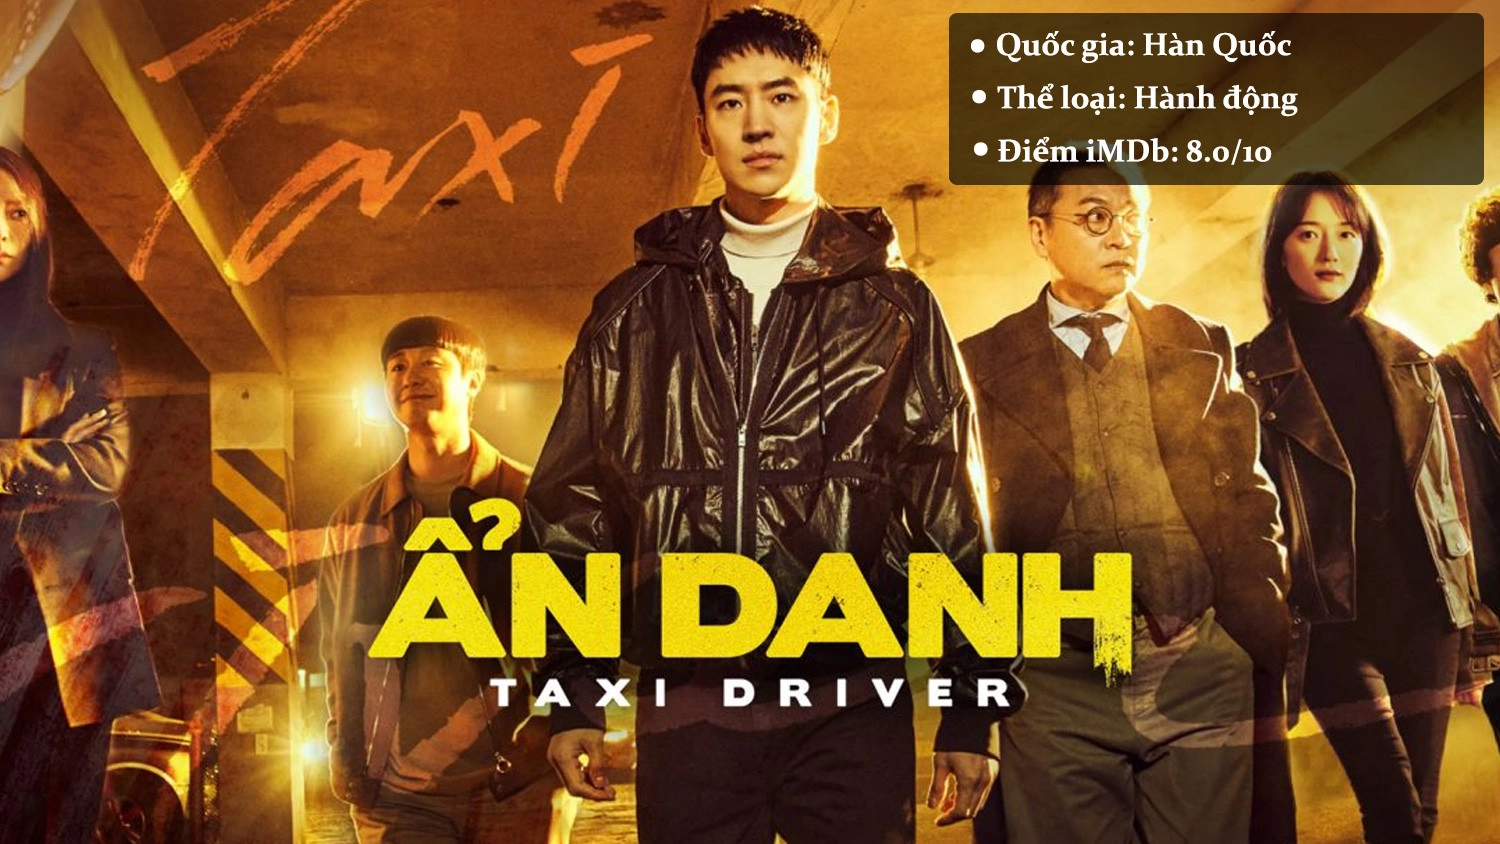 Taxi Driver – Ẩn Danh